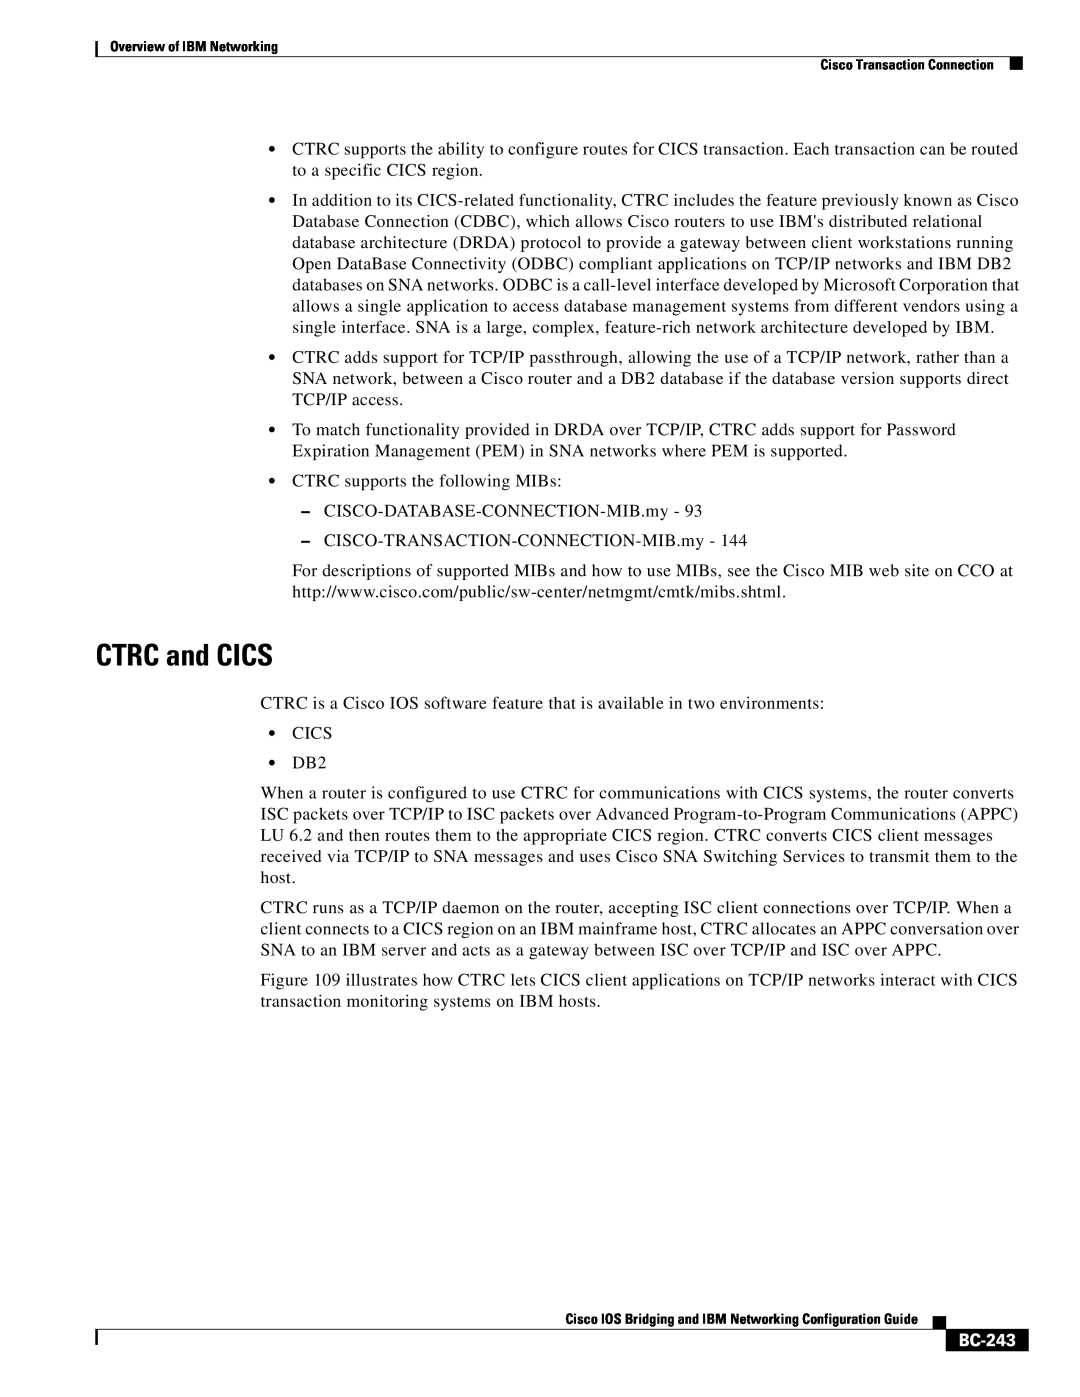 IBM BC-203 manual CTRC and CICS, BC-243 